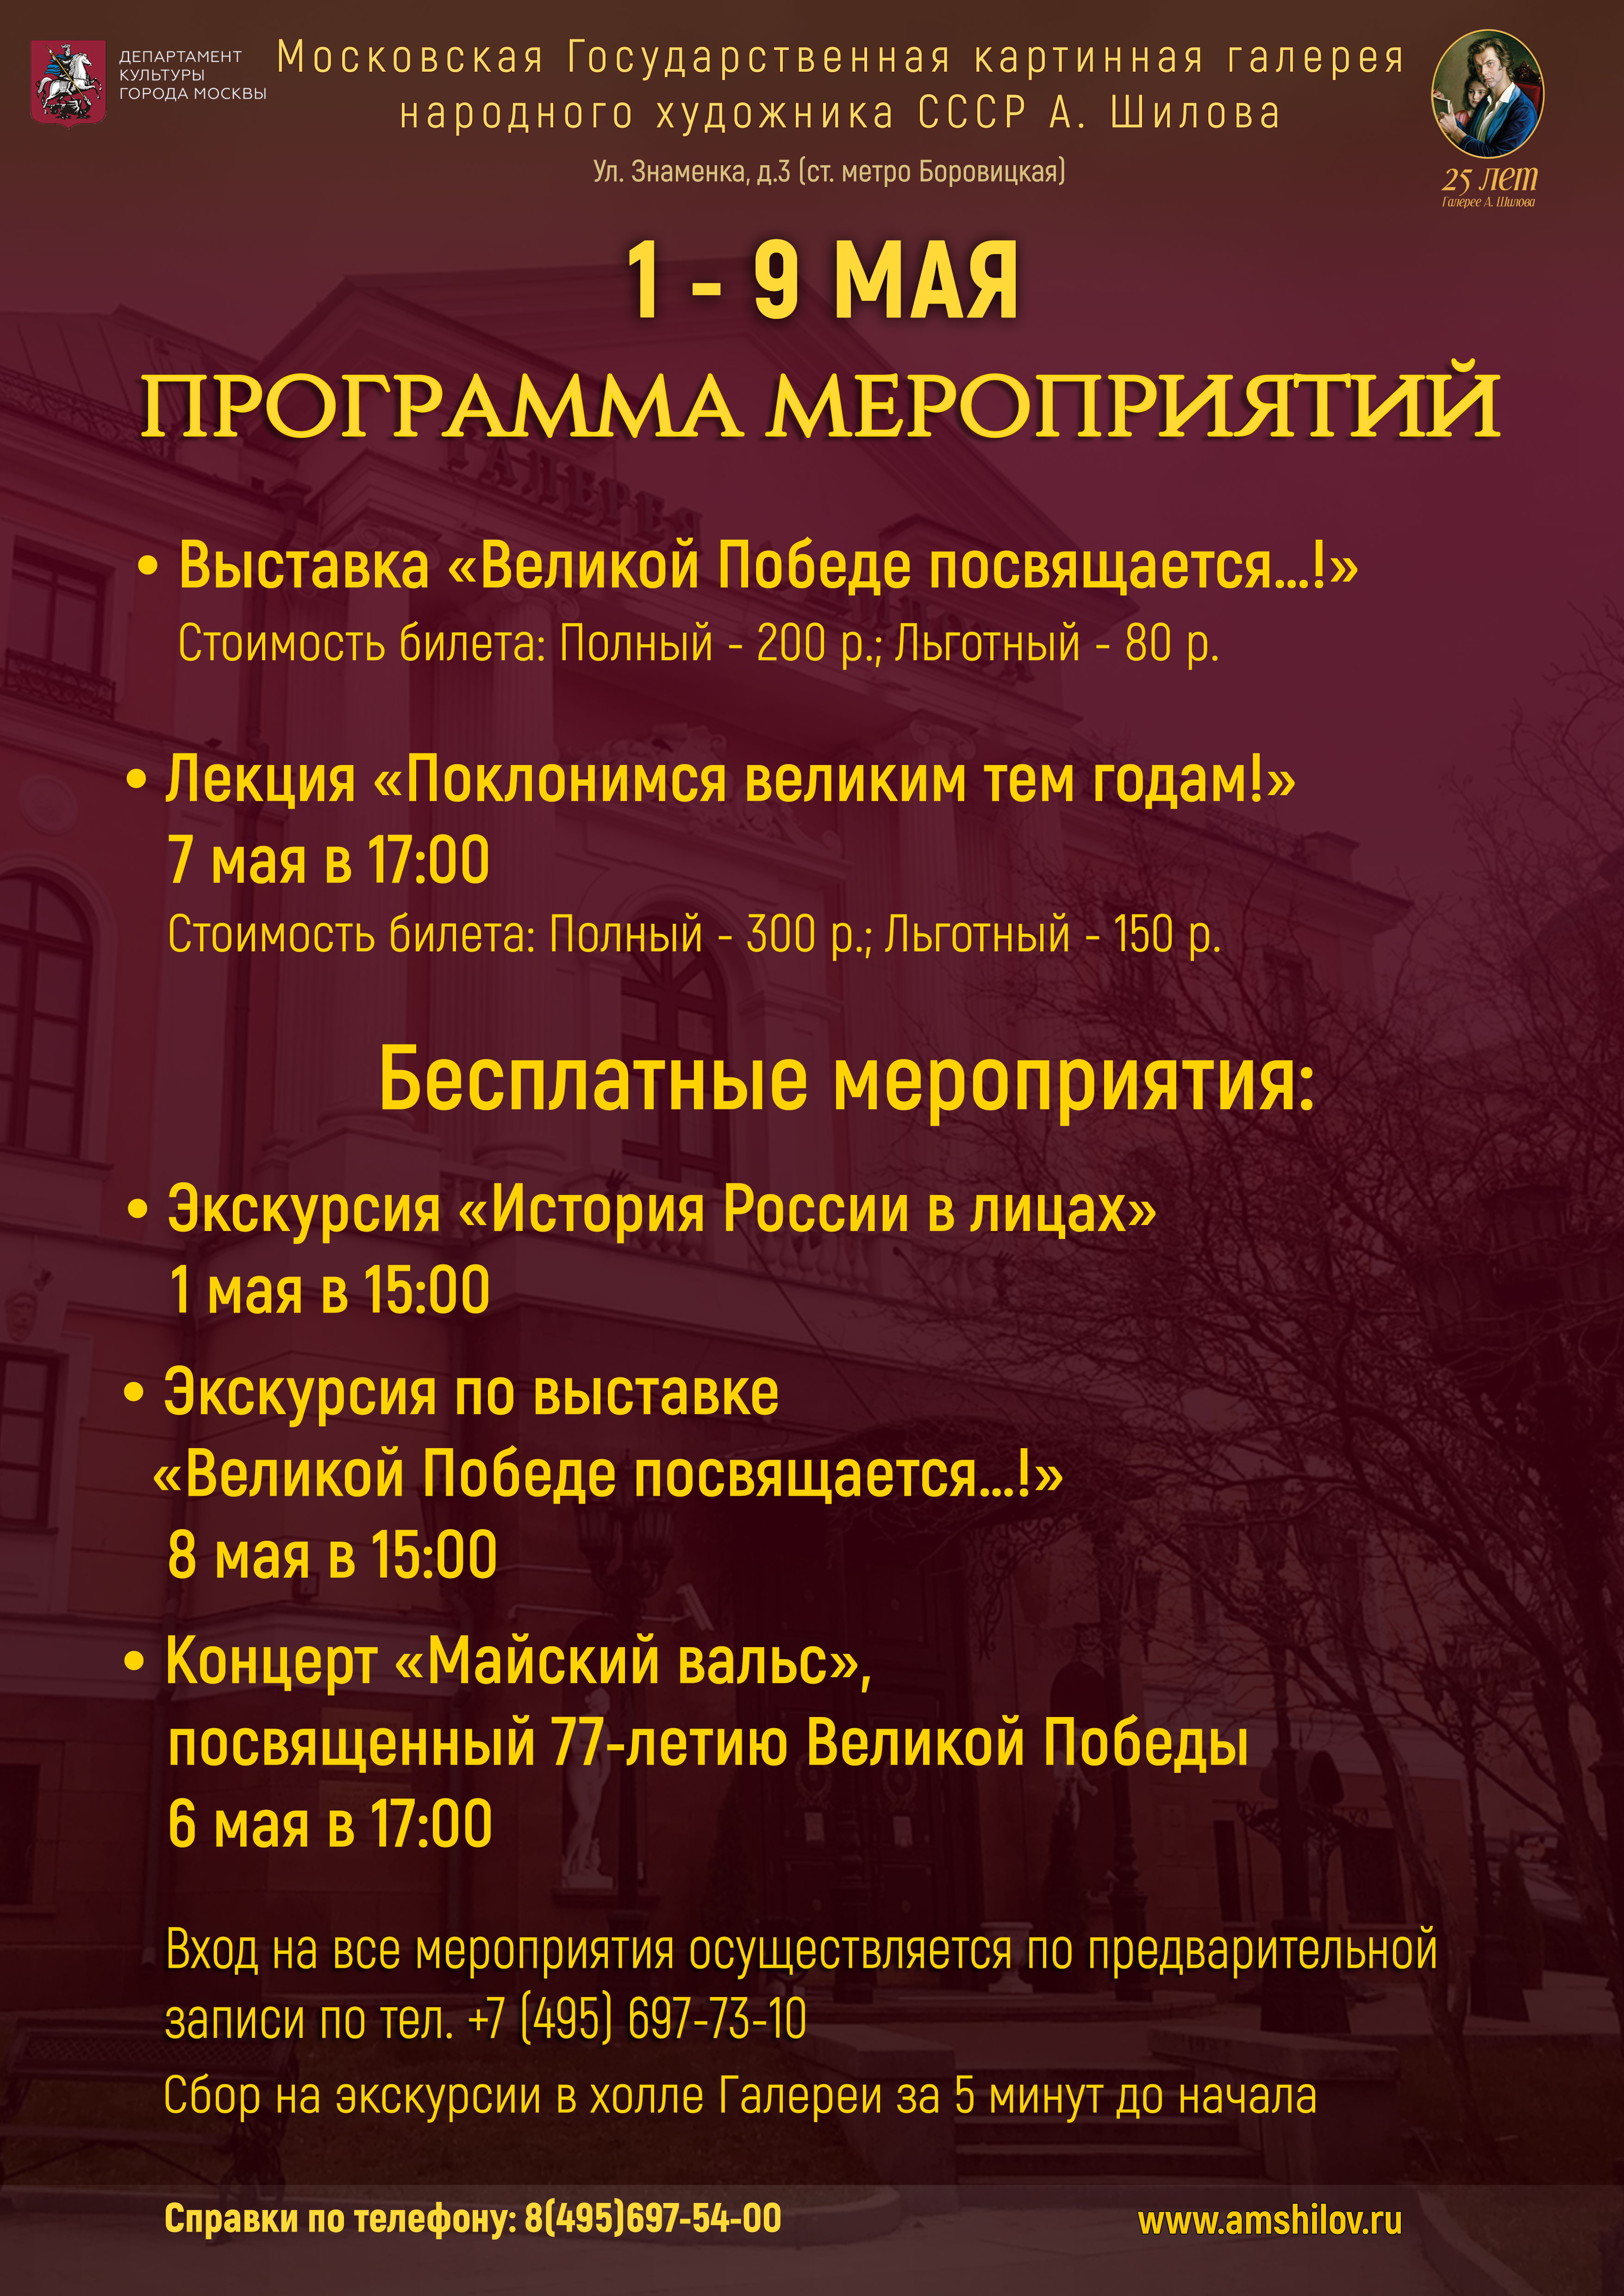 Программа мероприятий ГБУК г. Москвы «Галерея А. Шилова» на майские праздники